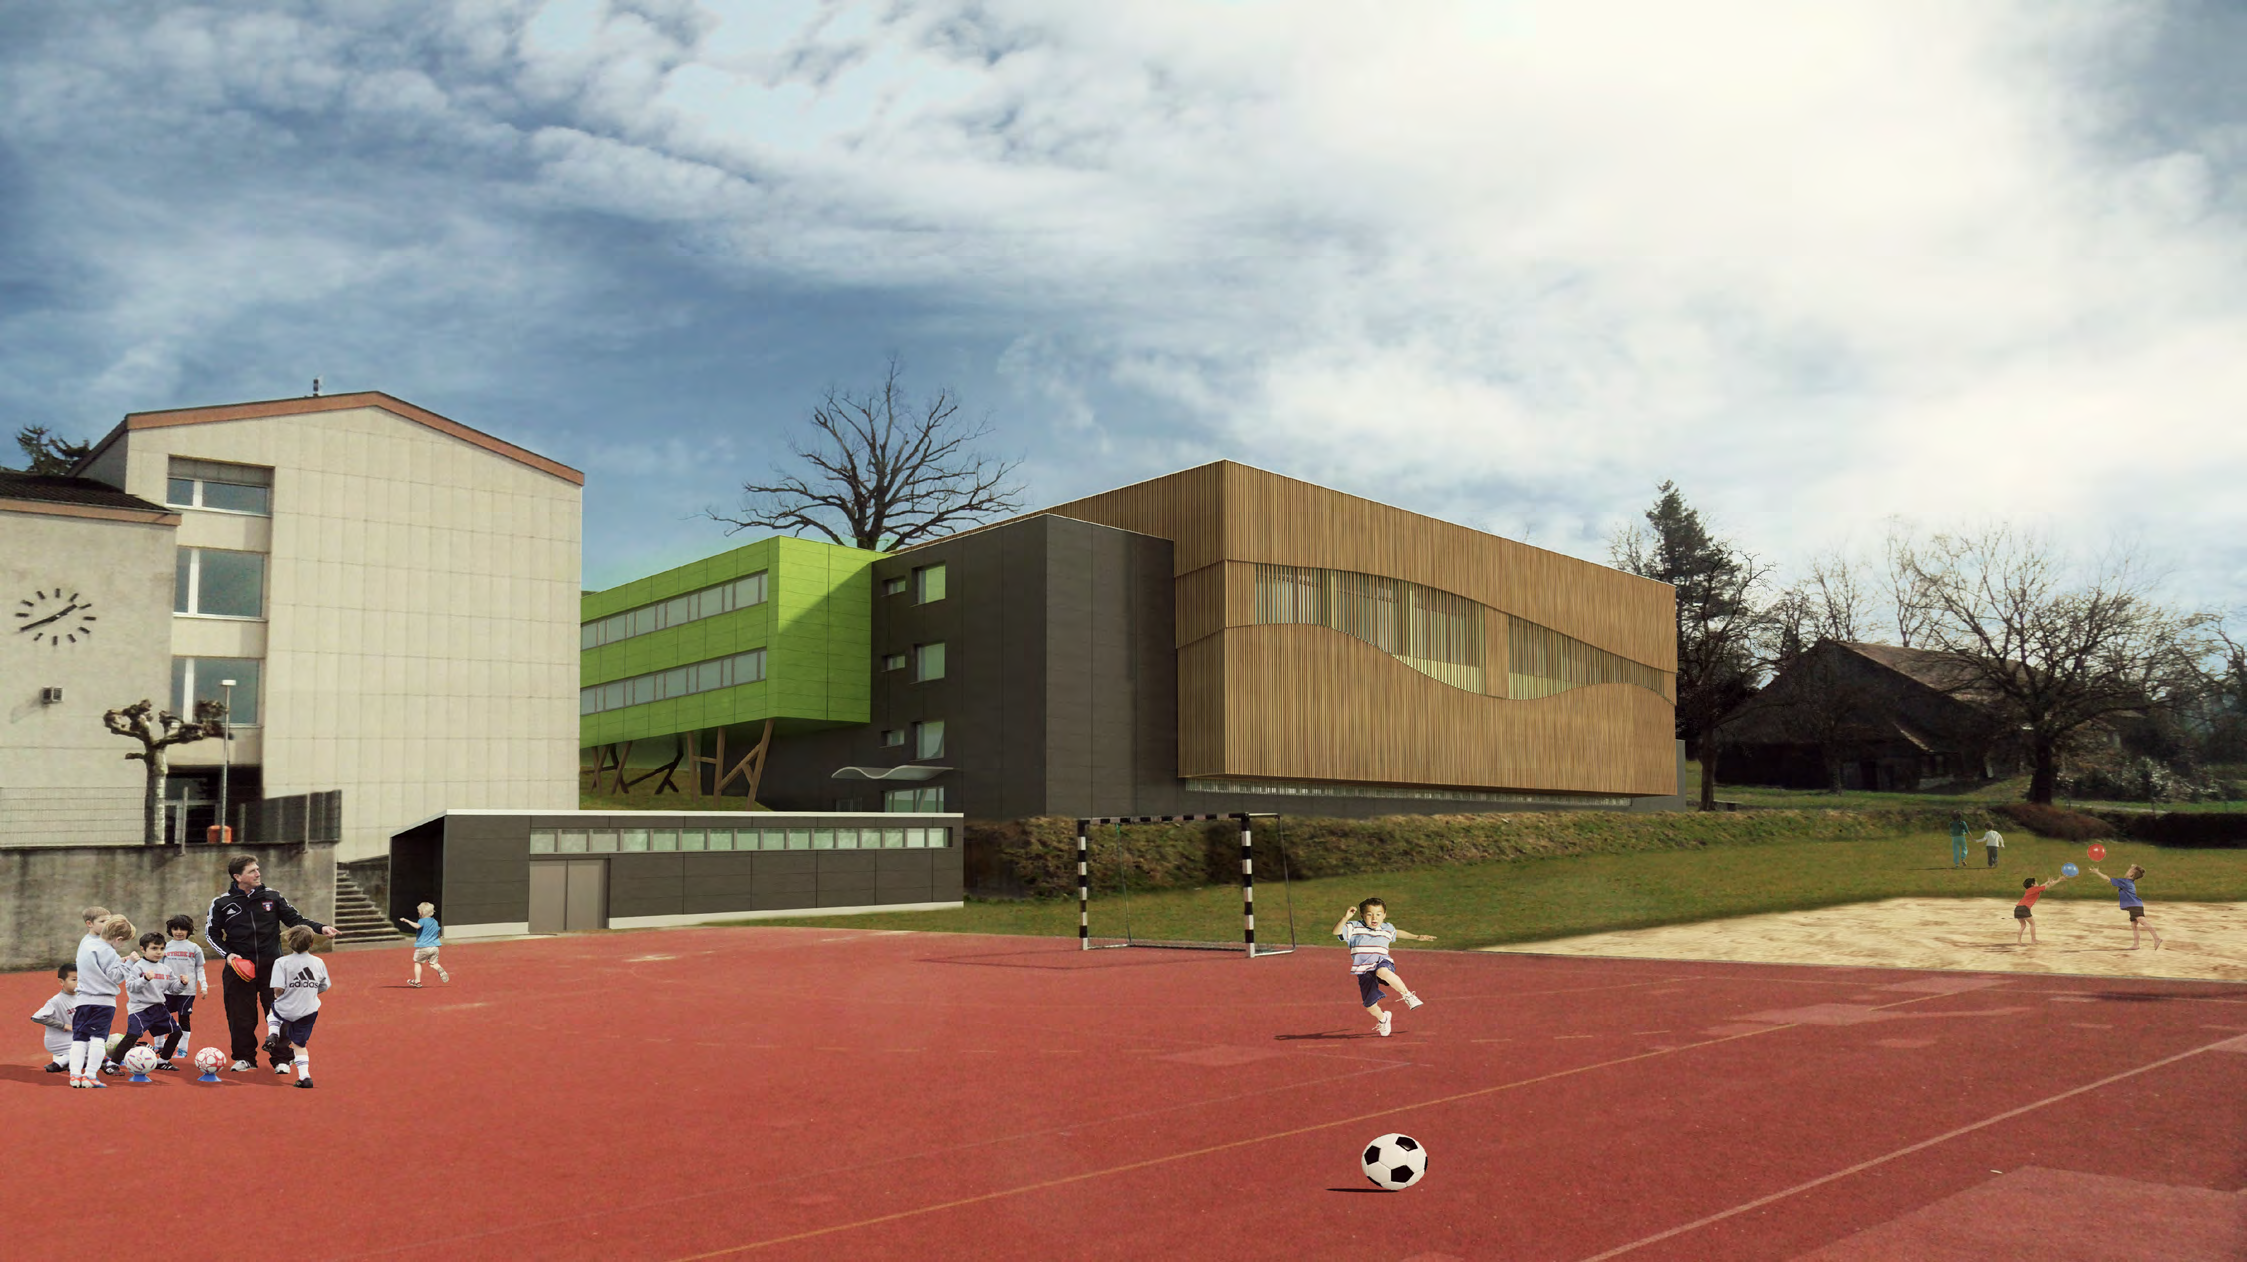 Architekturkonzept Die räumliche Stellung des Neubaus der Turnhalle orientiert sich an der orthogonalen Ausrichtung des bestehenden Schulbaus.